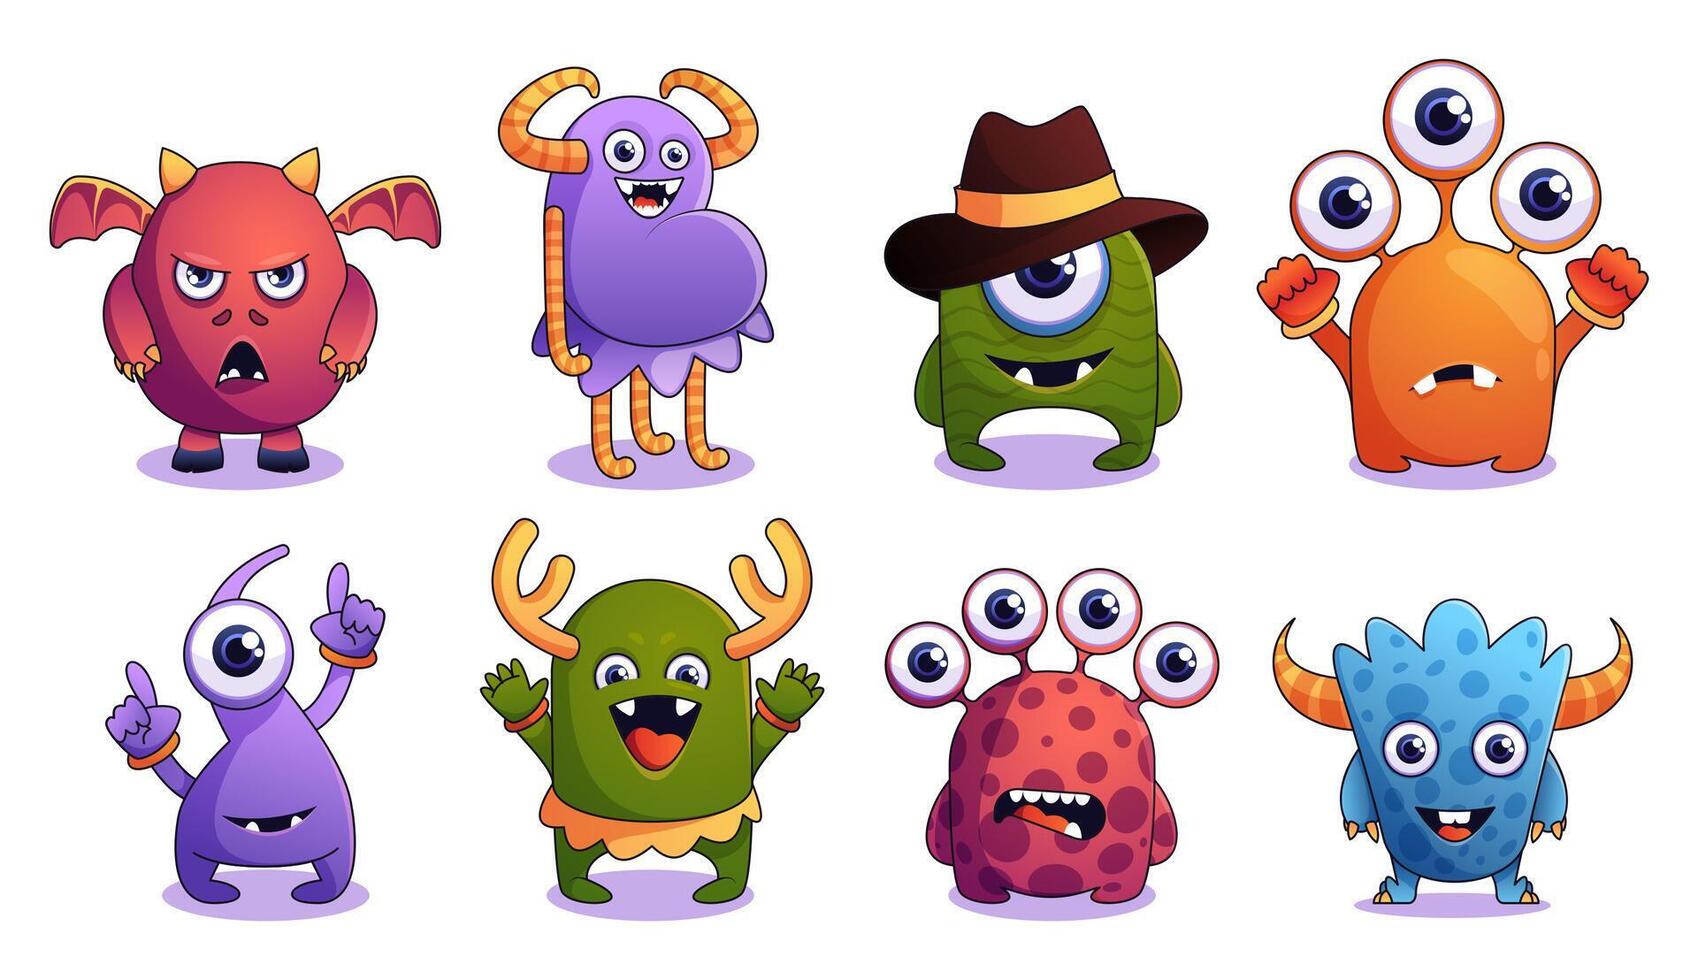 komisch Monster- Sammlung. süß Comic Monster- Gesichter mit komisch Ausdrücke, Außerirdischer Kreaturen von anders Farben und Größen. Vektor isoliert einstellen